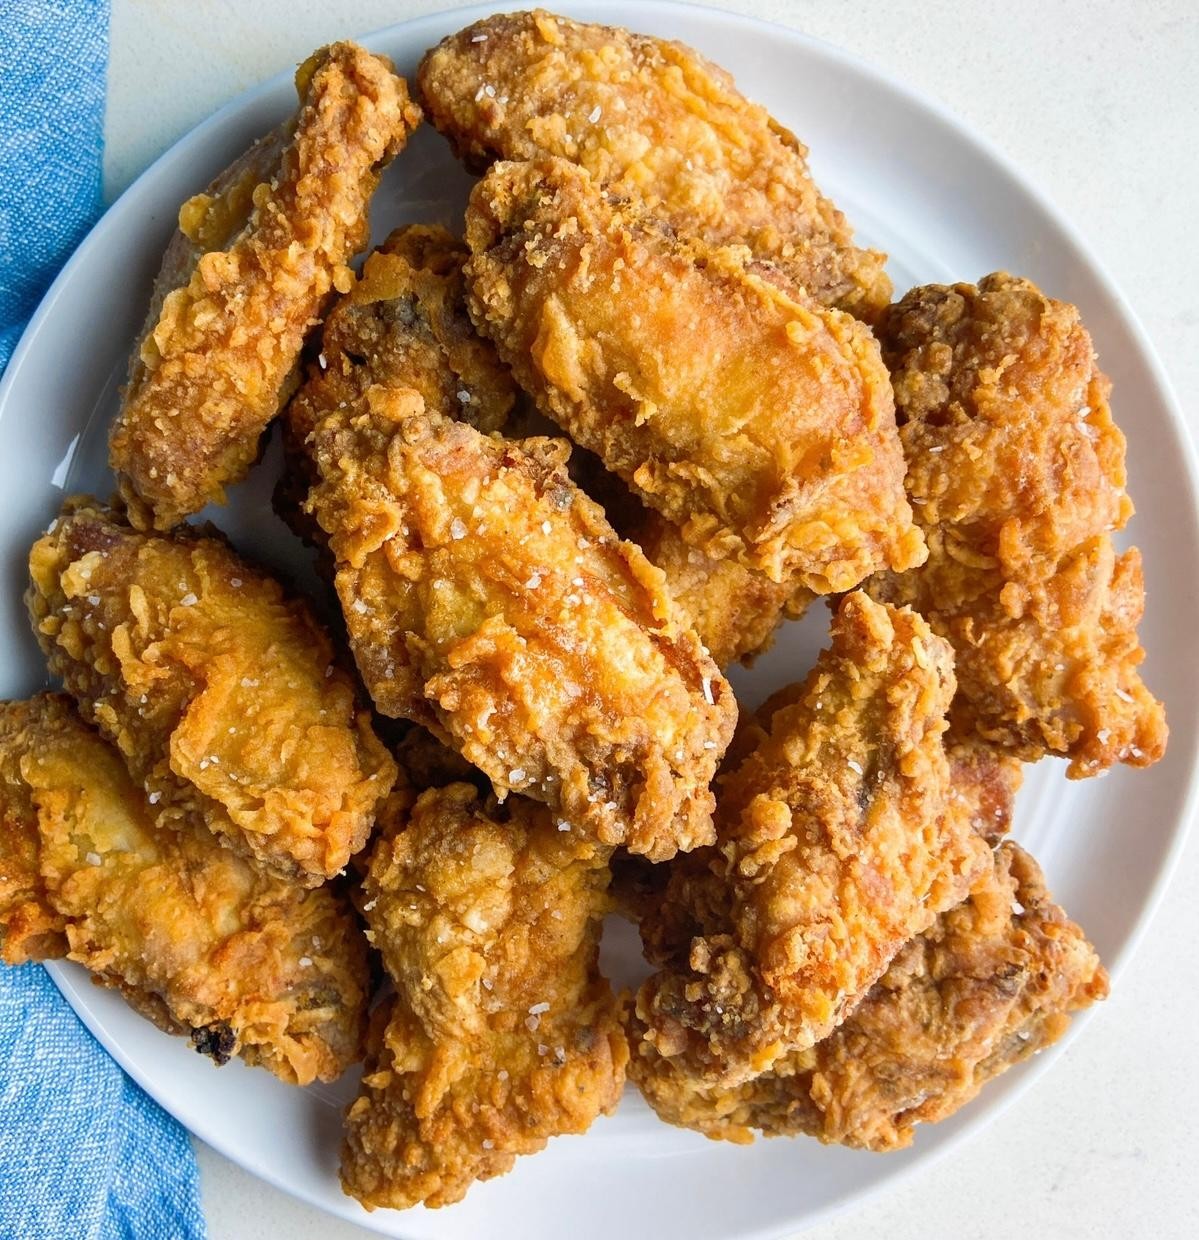 8 Fried Chicken Wings